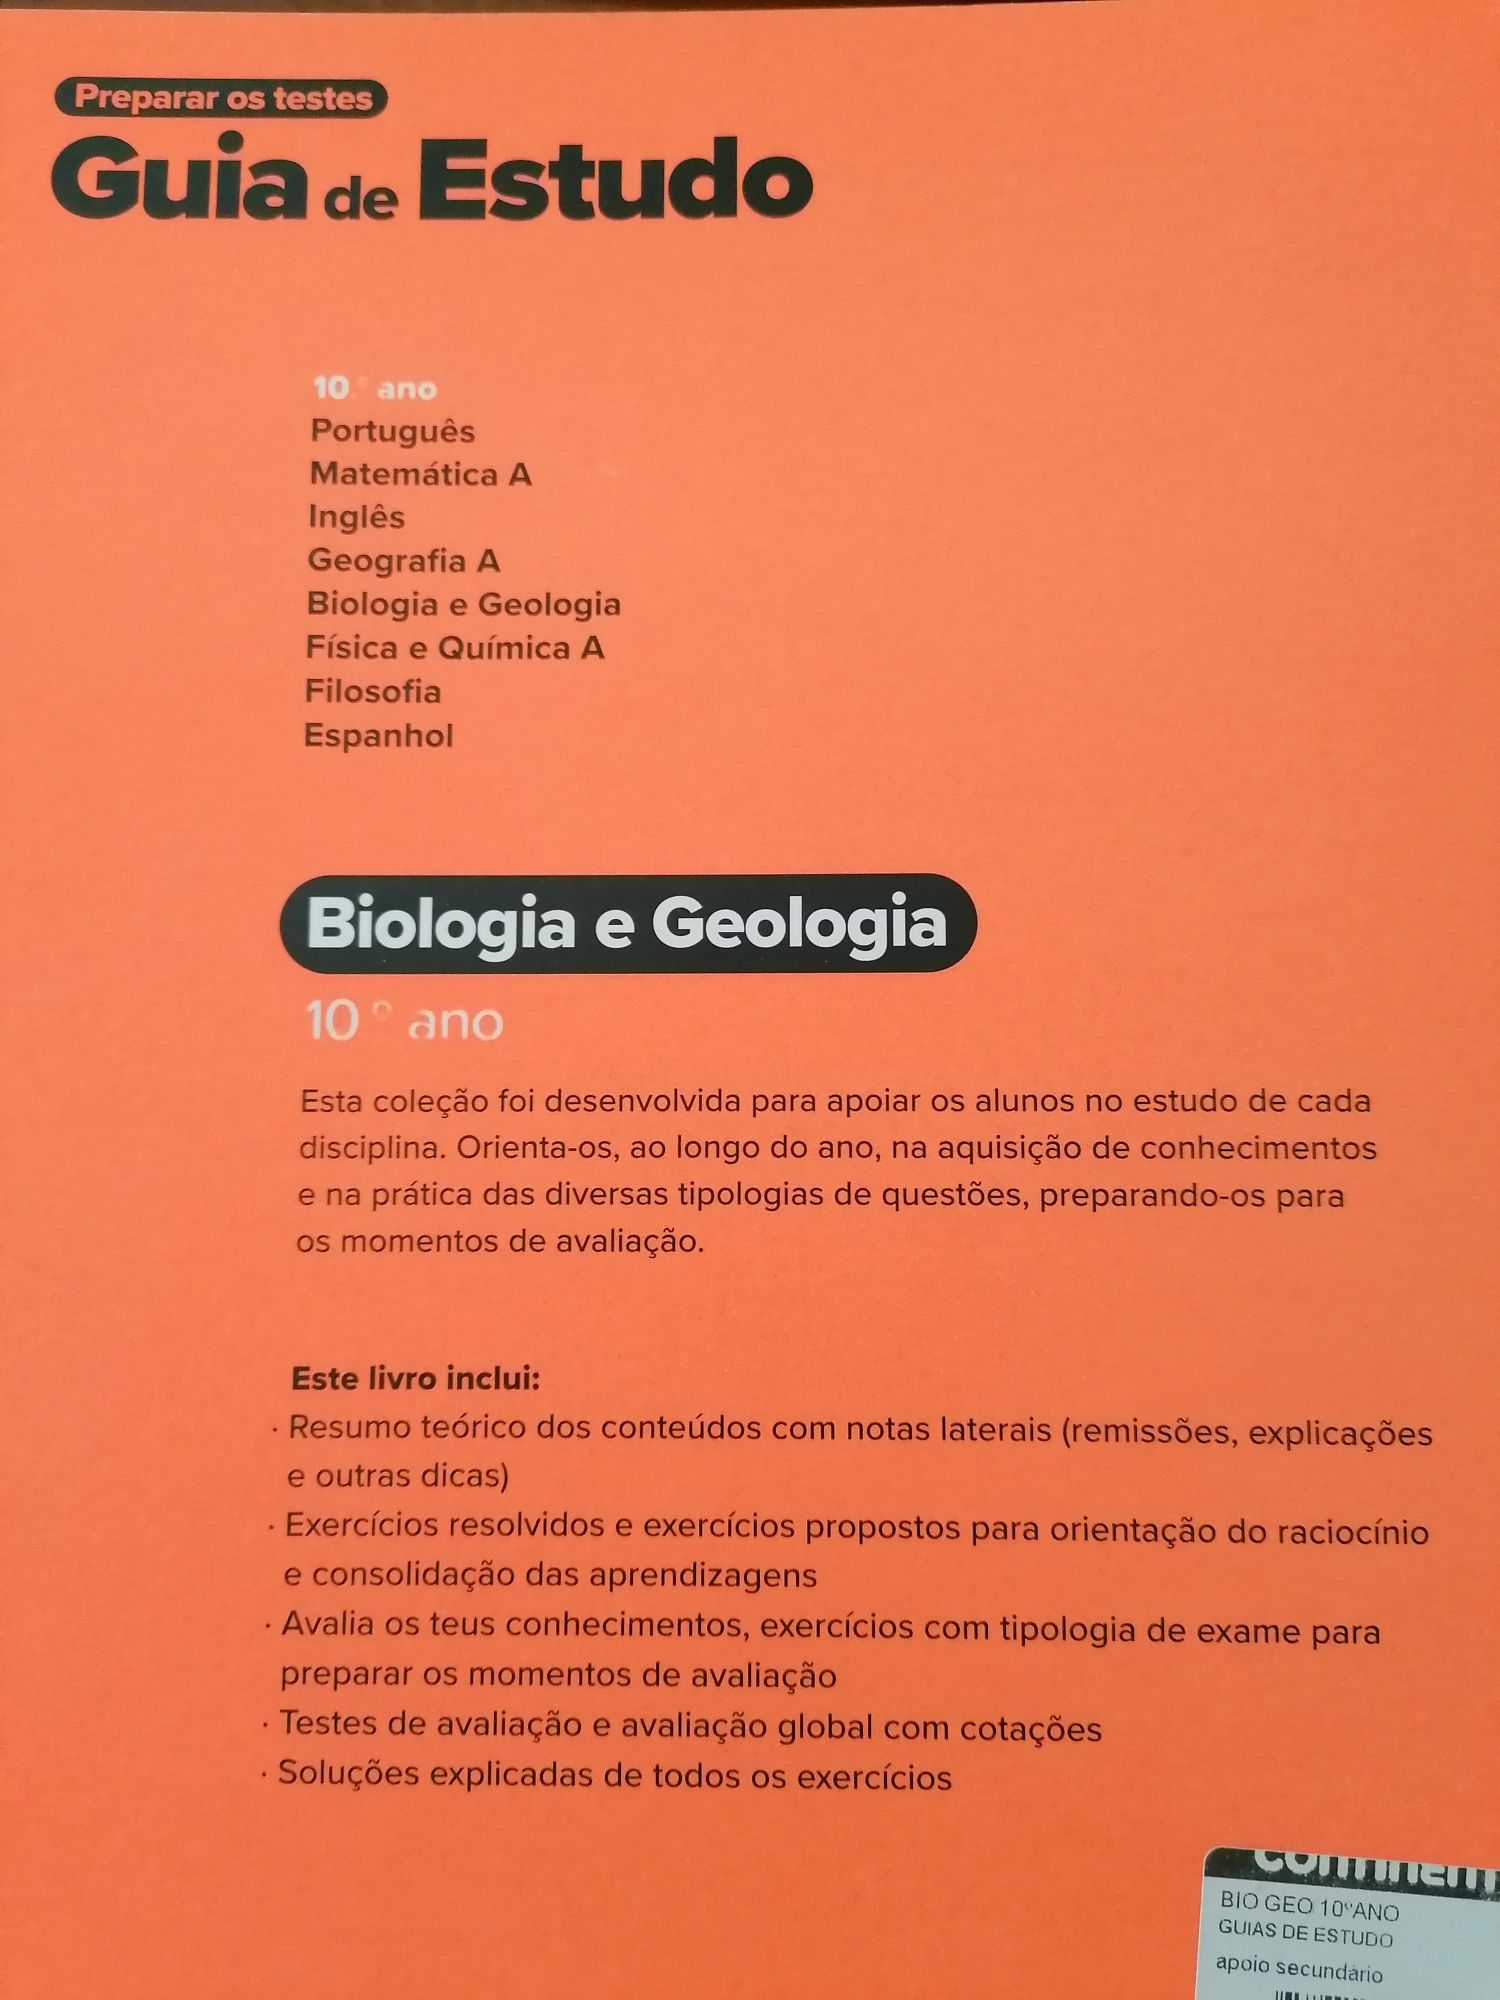 Guia de estudo de biologia e geologia 10° ano